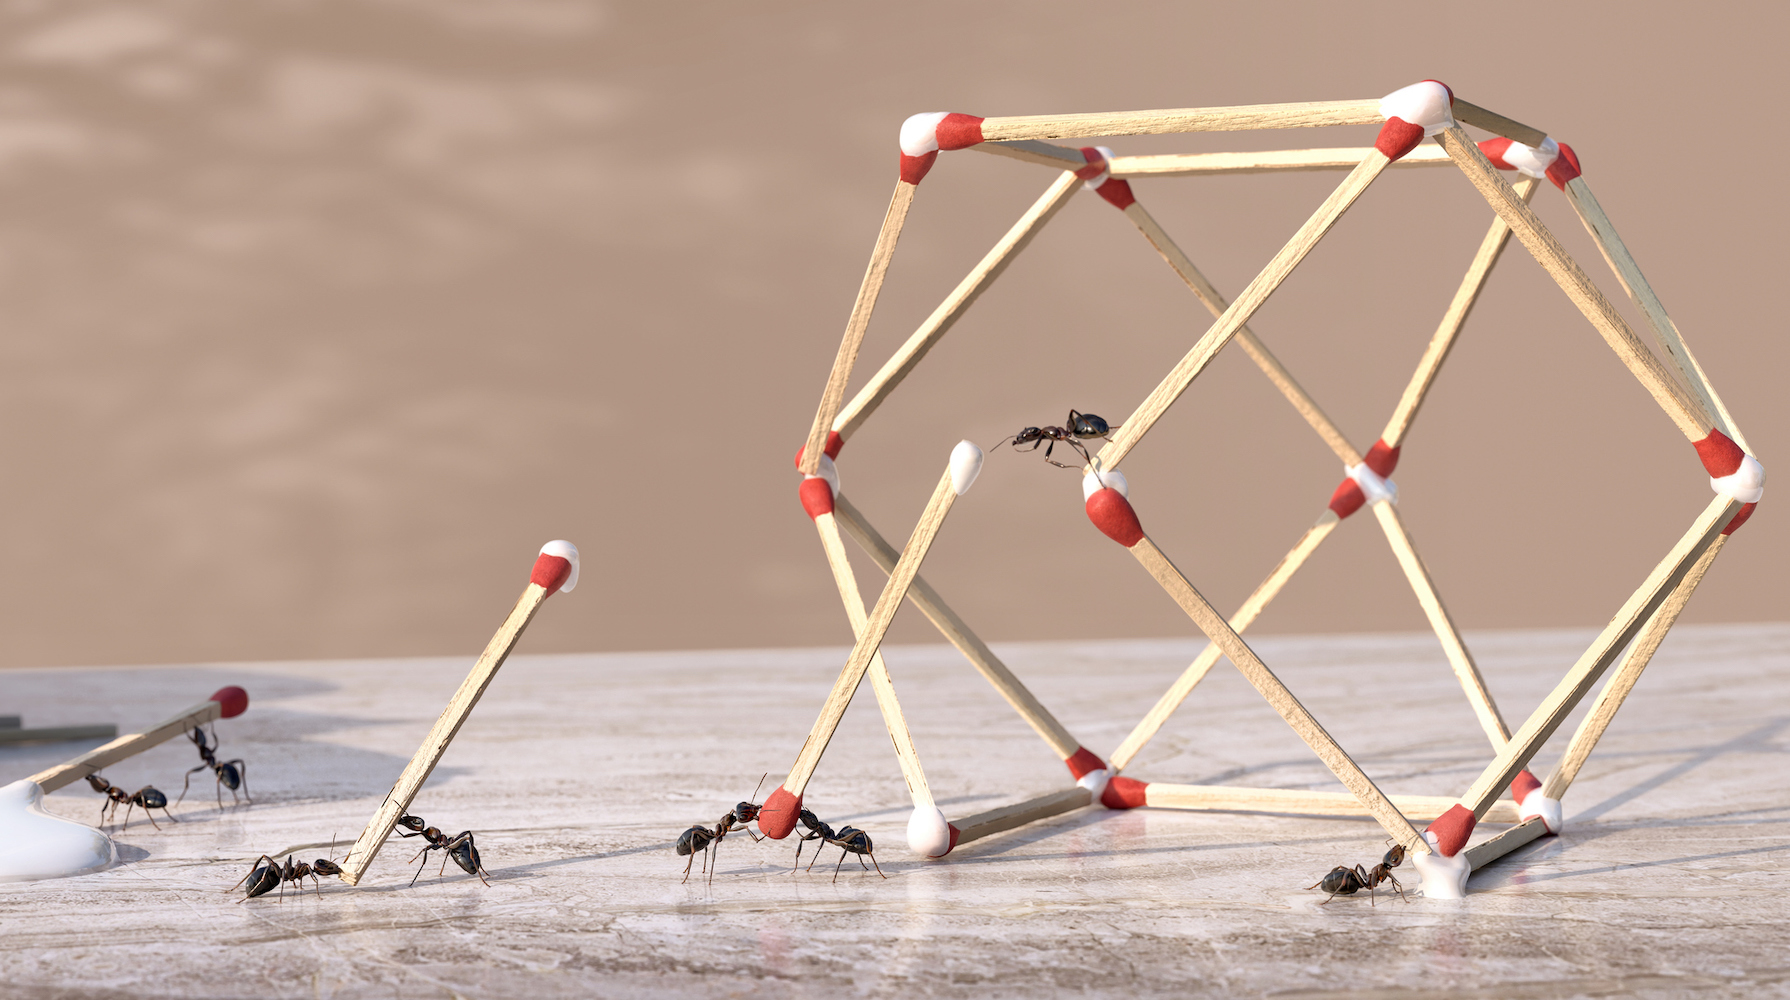 Um grupo de formigas trabalhando em equipe para formar uma escultura geométrica tridimensional com cola e fósforos.  As formigas são pontas de palito de fósforo mergulhadas em cola pingando de um frasco de cola e posicionadas para formar a forma em uma bancada de mármore.